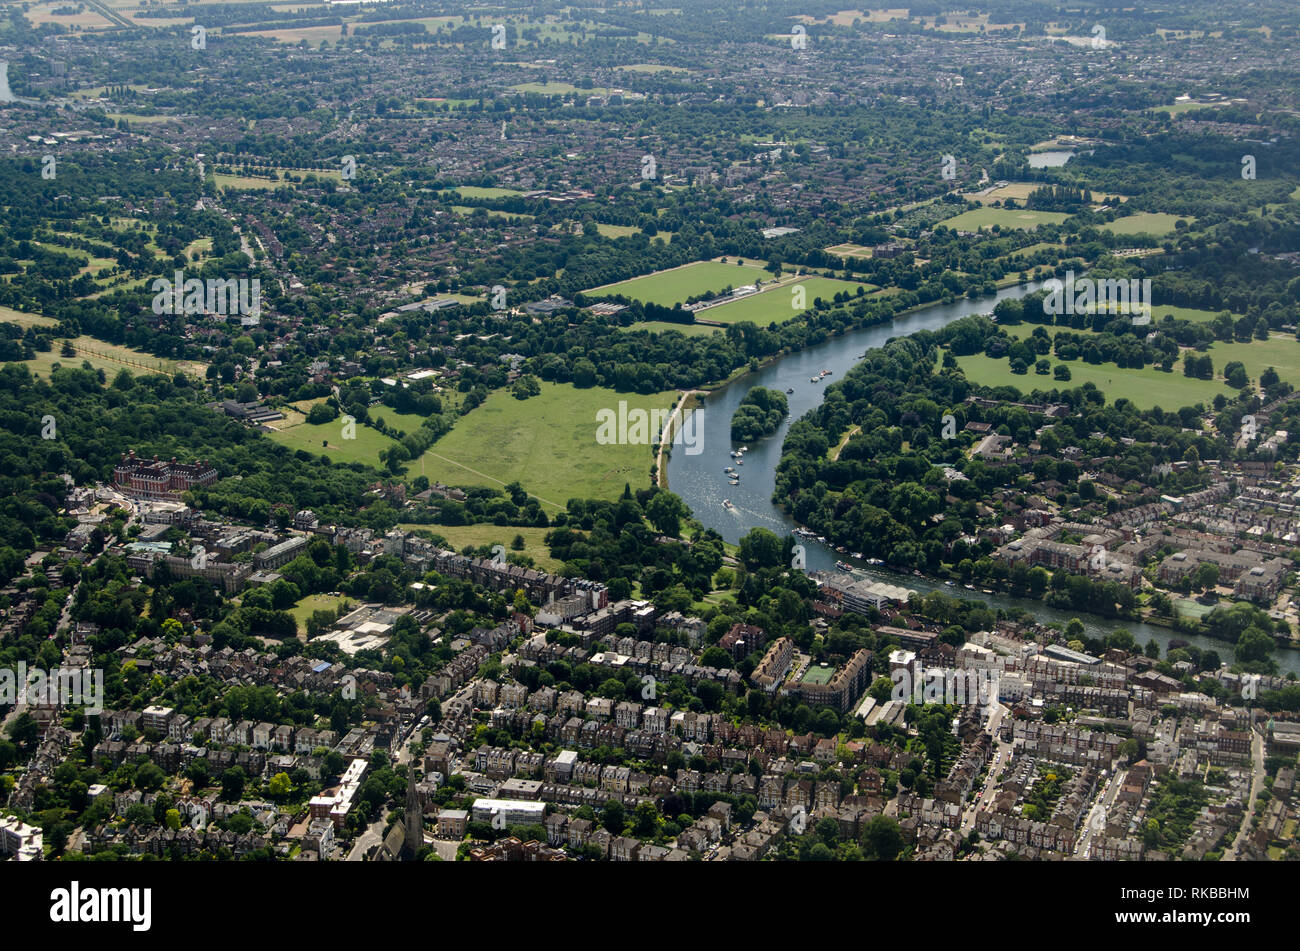 Vue aérienne du London Borough of Richmond upon Thames sous le soleil d'après-midi d'été avec la Tamise serpentant à travers l'image. Glover's Island je Banque D'Images